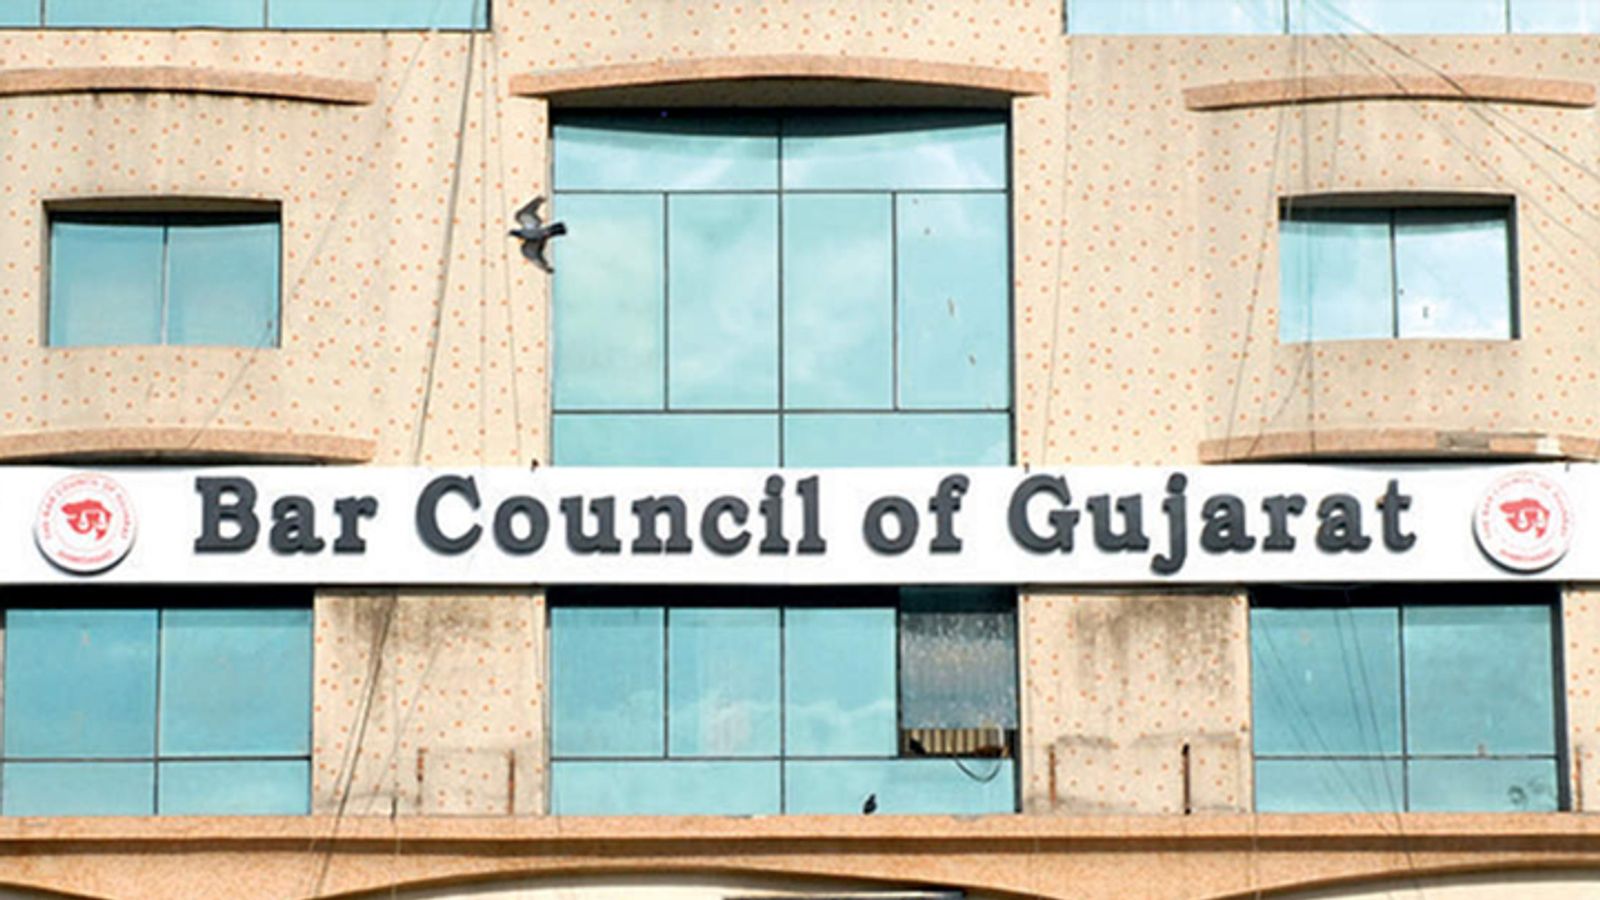 ગુજરાત બાર કાઉન્સિલે  110 વકીલોના મૃત્યુ થતાં તેમના વારસદારોને 2.75 કરોડ વળતર ચુકવાયું